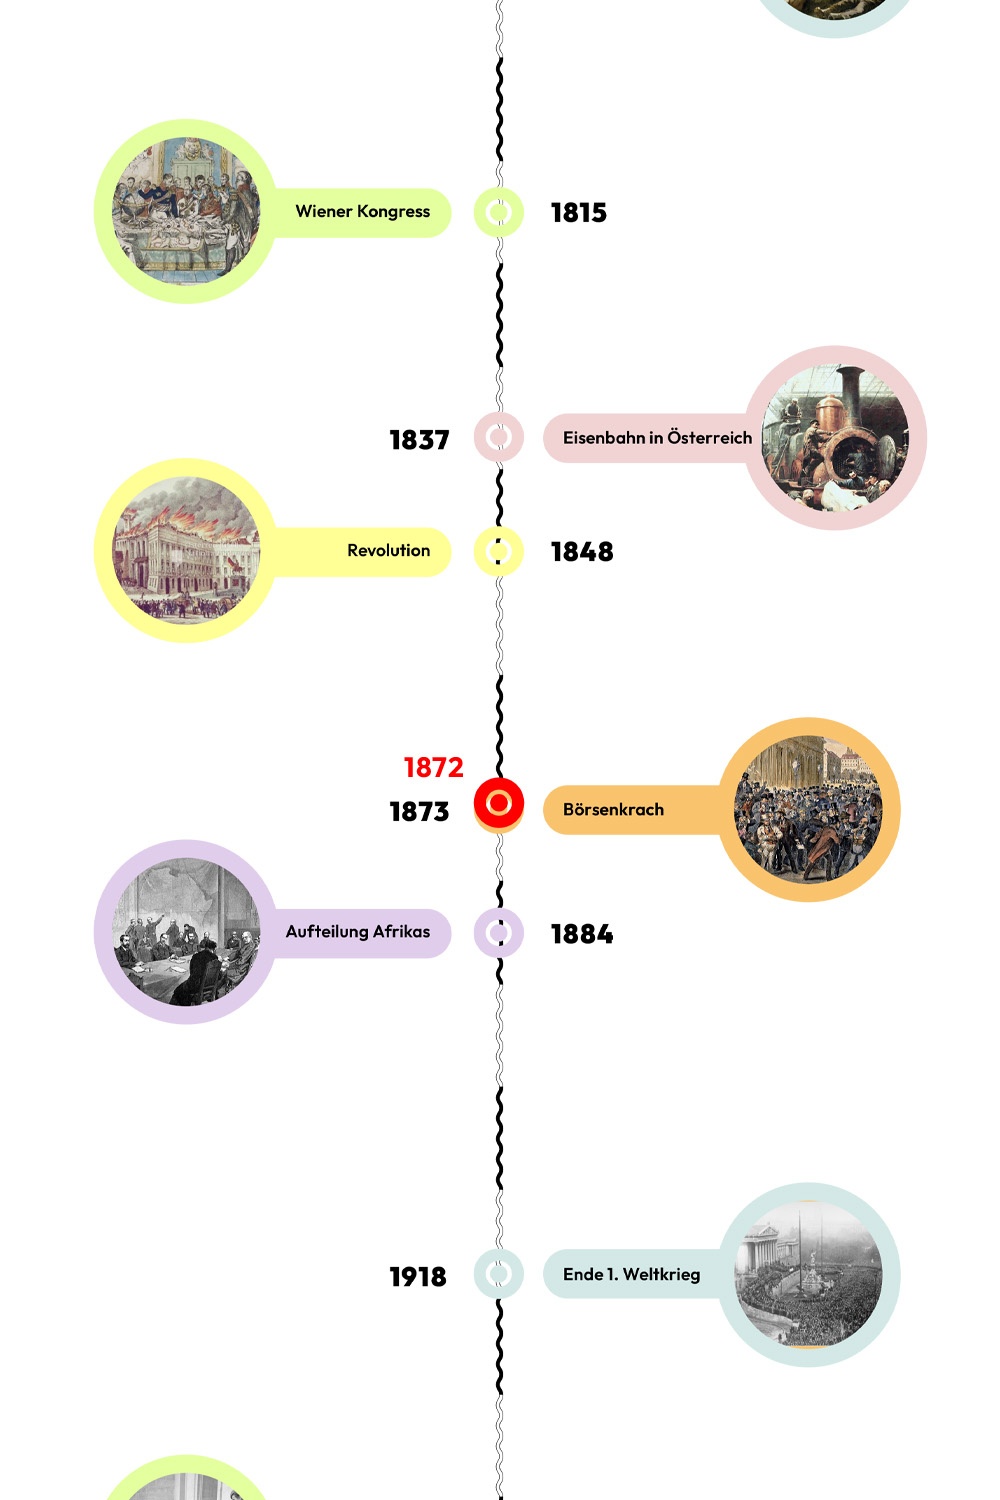 Zeitstrahl mit historischen Ereignissen - 1872 ist hervorgehoben © wasbishergeschah.at